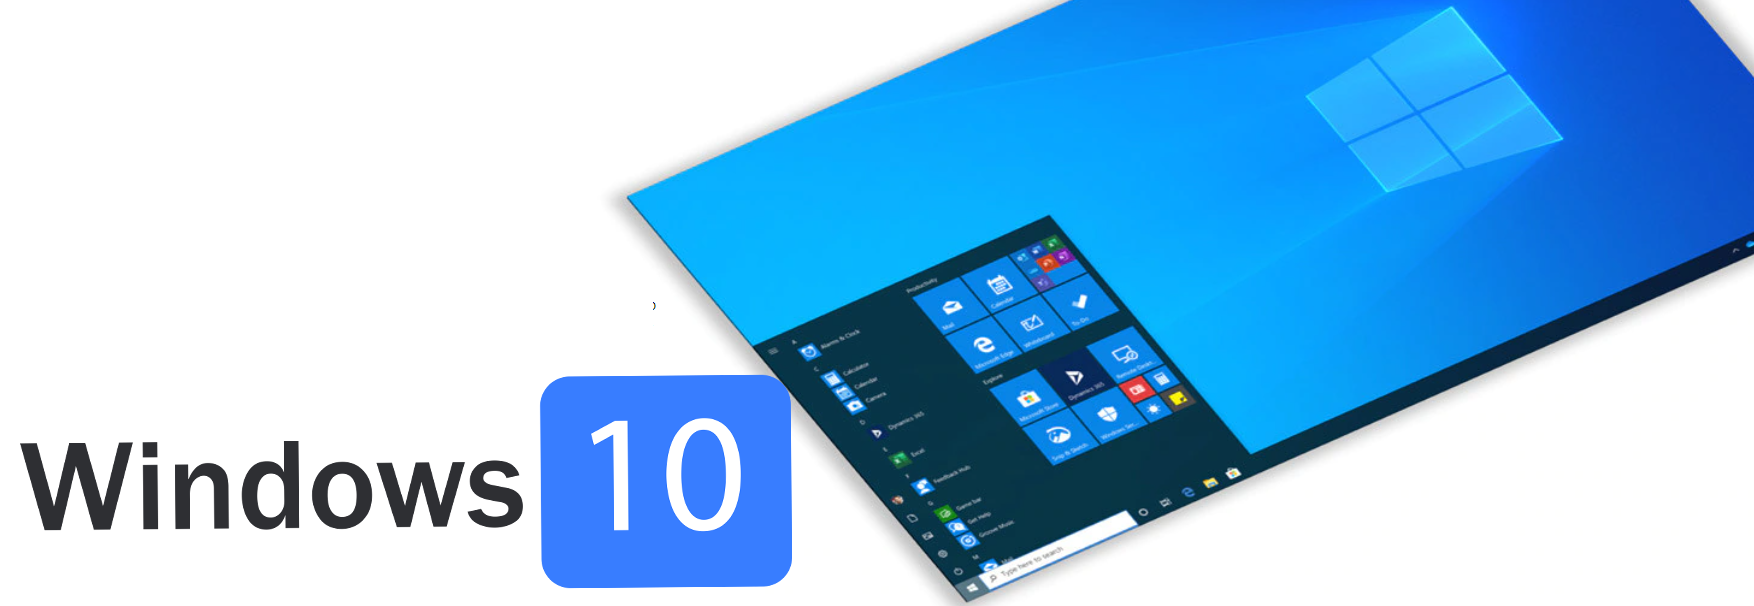  Лицензионный ключ Windows 10 Pro   Гарантия